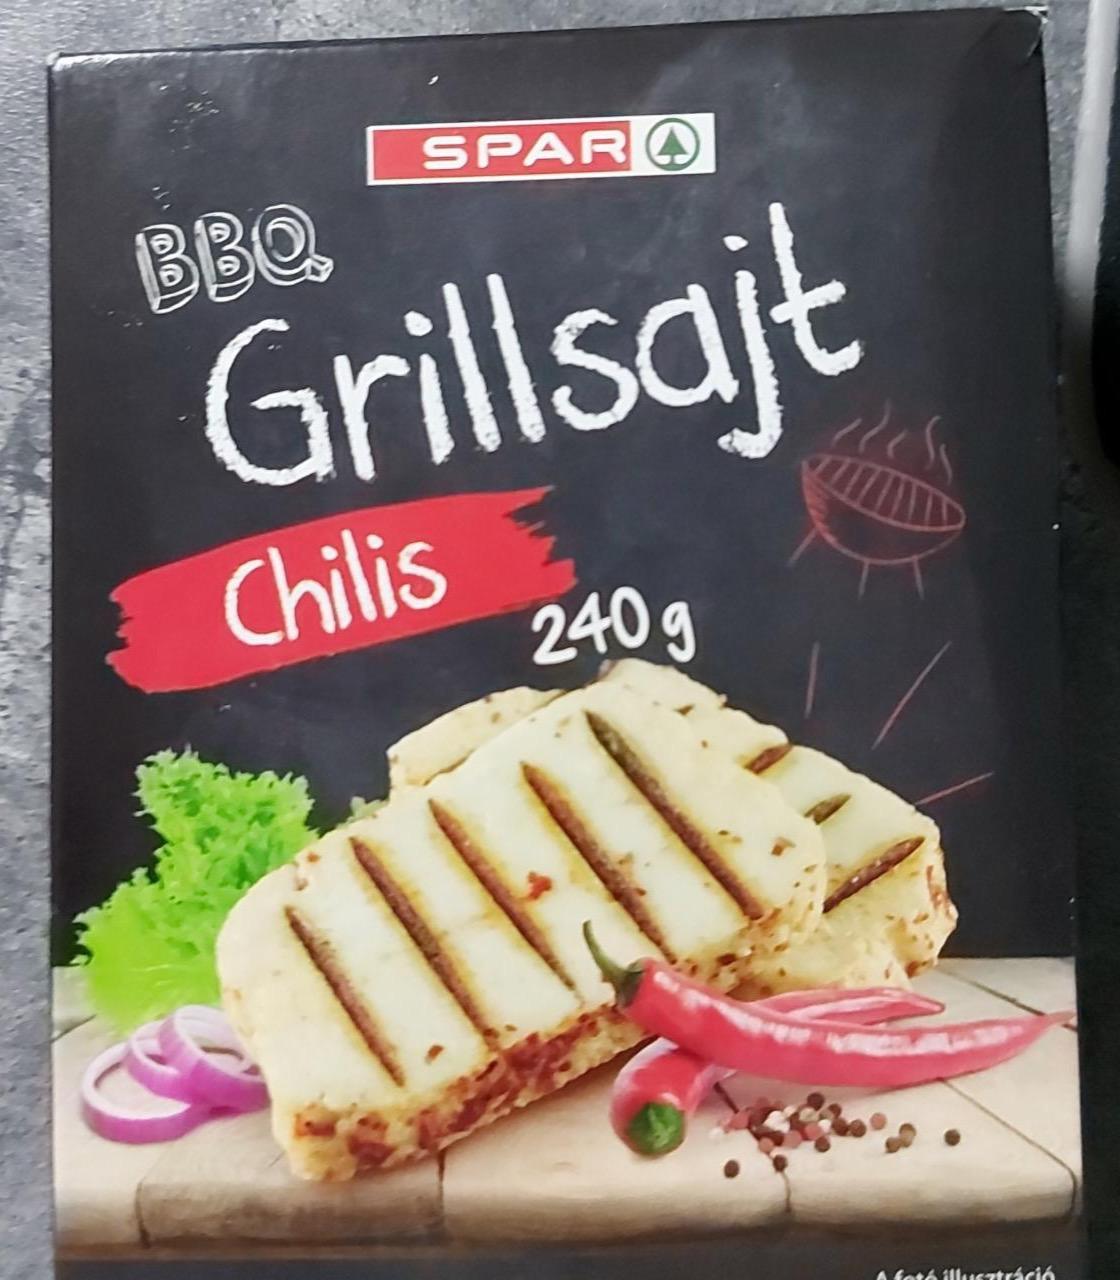 Képek - BBQ Grillsajt chilis Spar